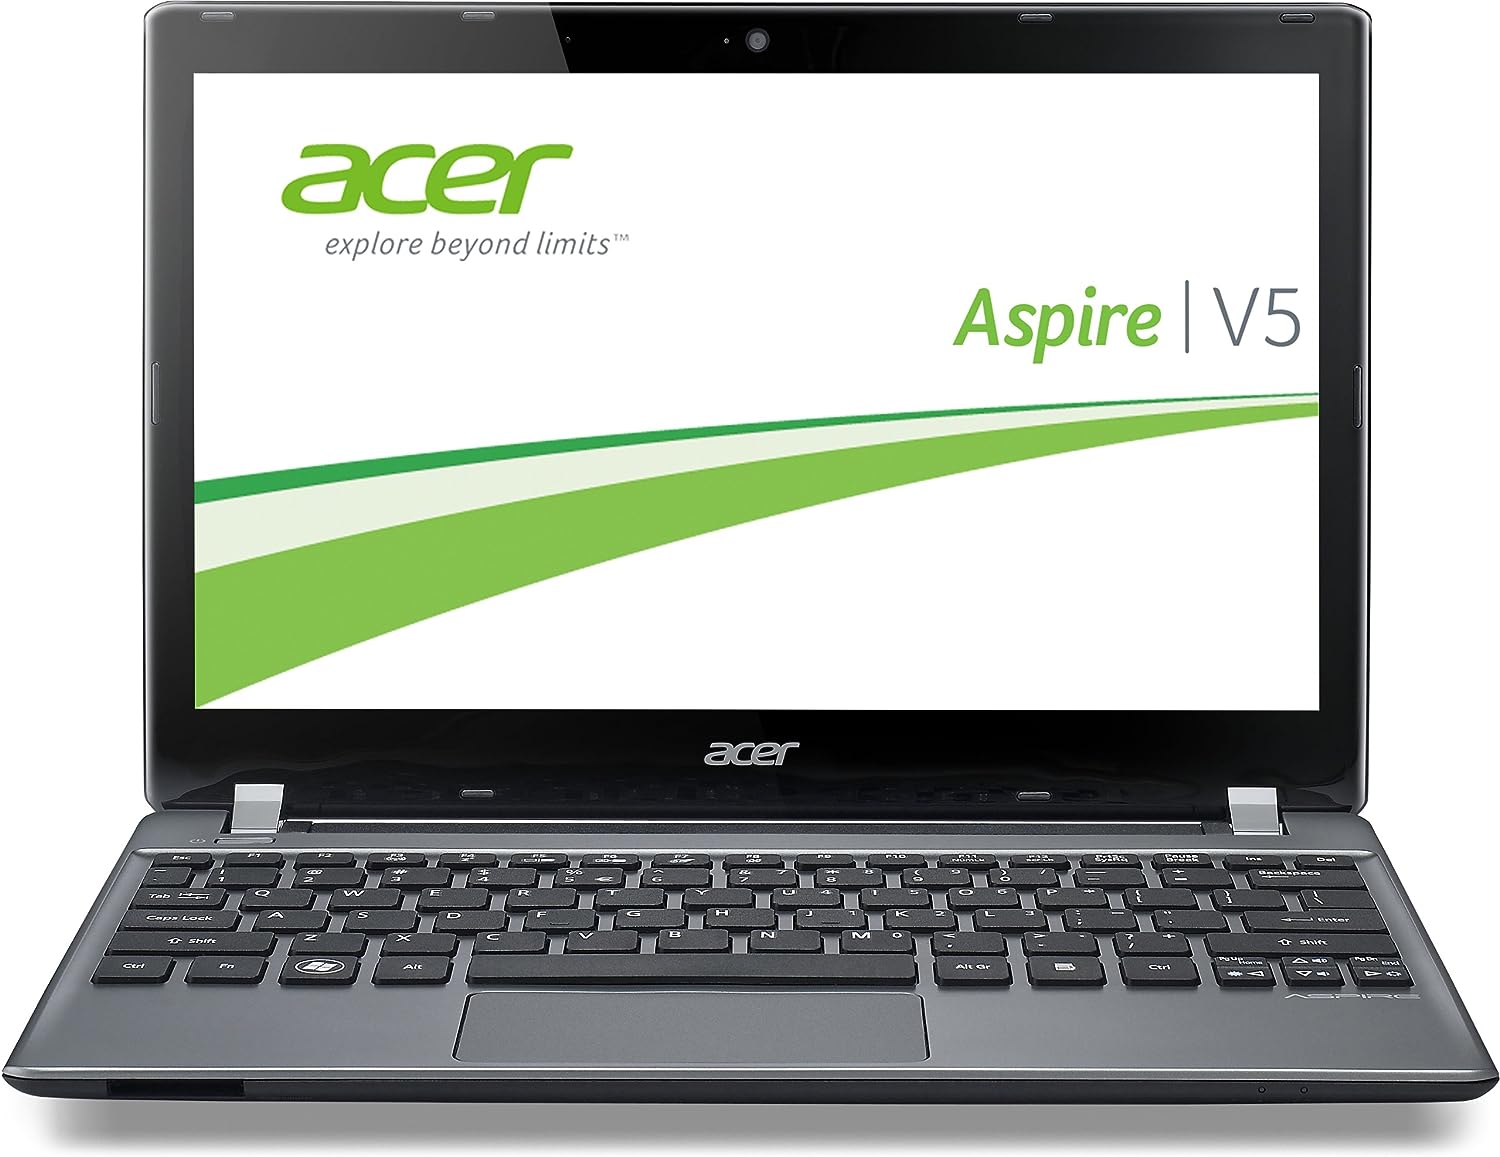 Acer Aspire V5-171 Notebook